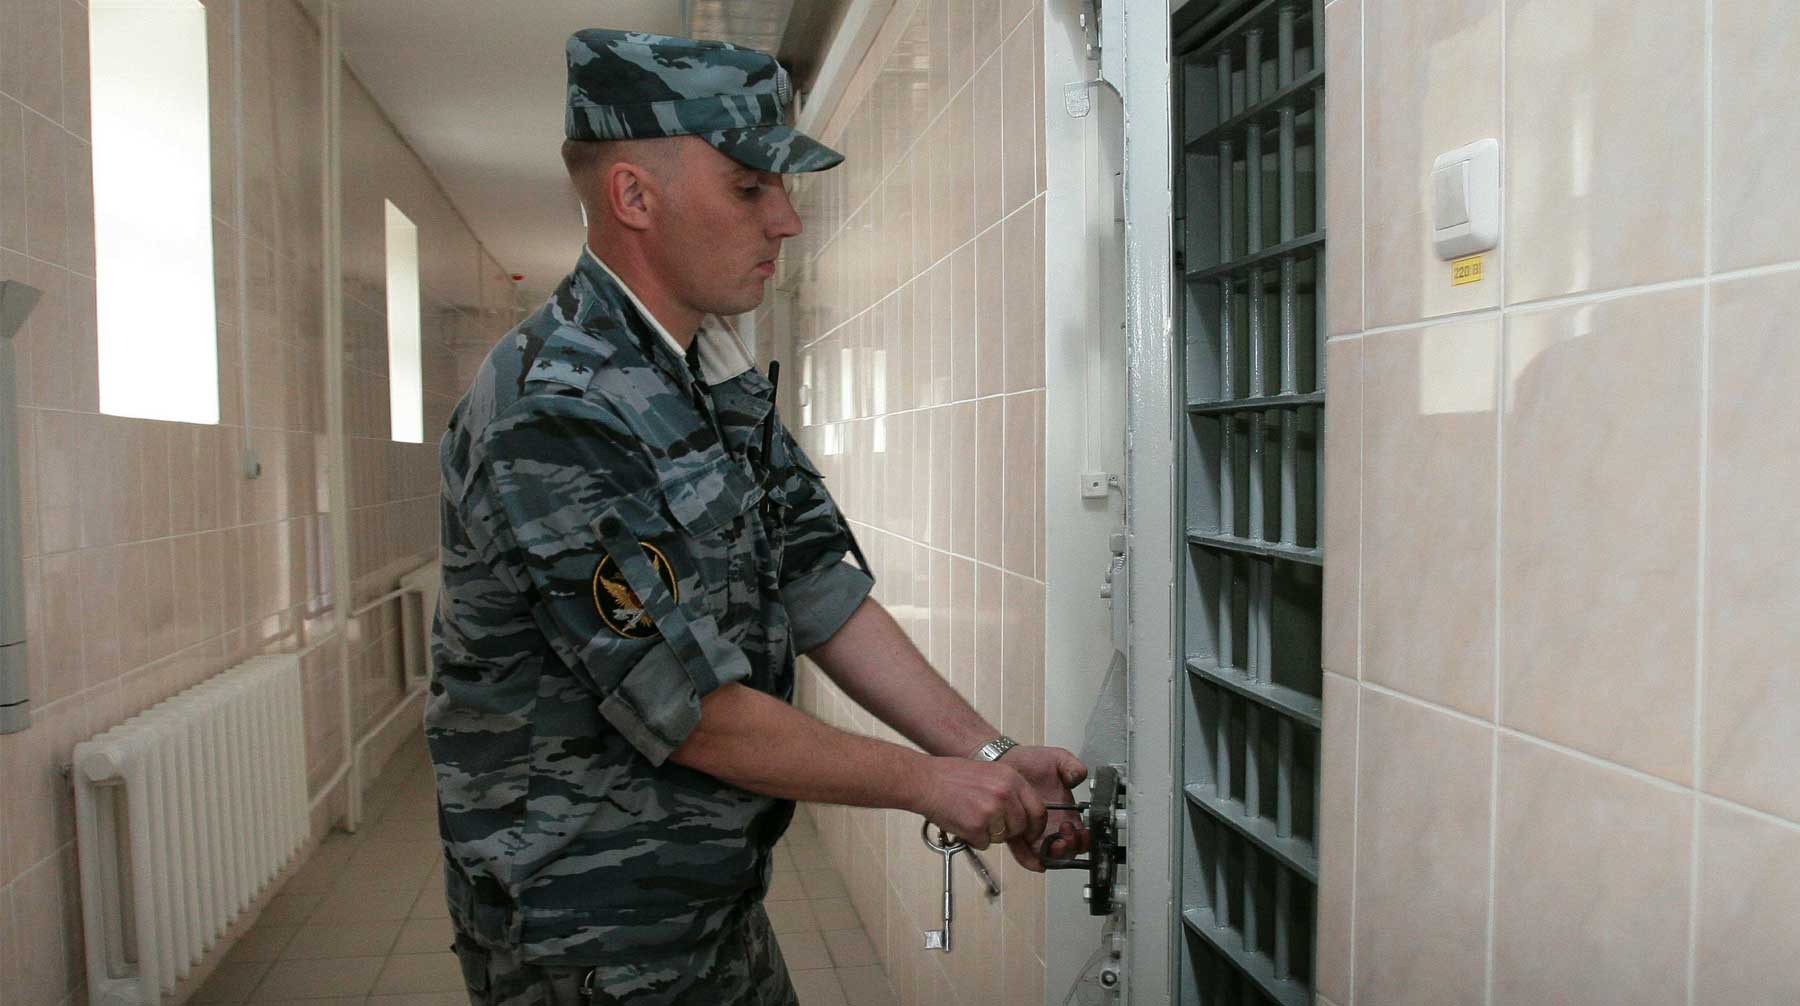 Dailystorm - Киев предложил обменять россиян на арестованных в РФ украинцев по формуле «25 на 25»